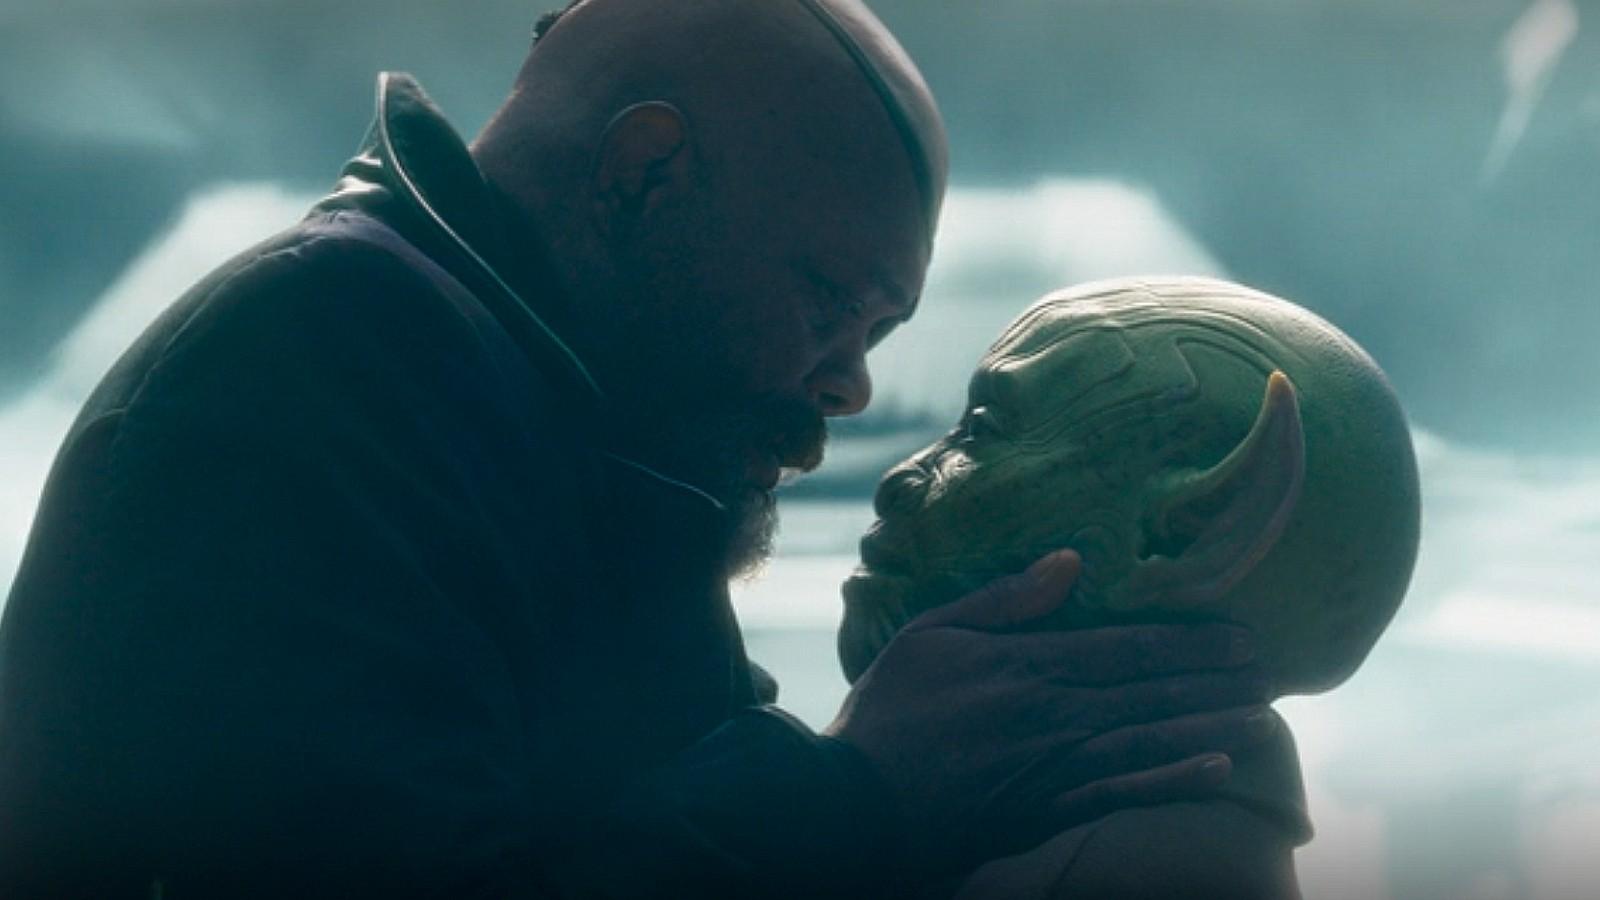 Secret Invasion' Trailer: Nick Fury Fights Skrulls in Marvel Show